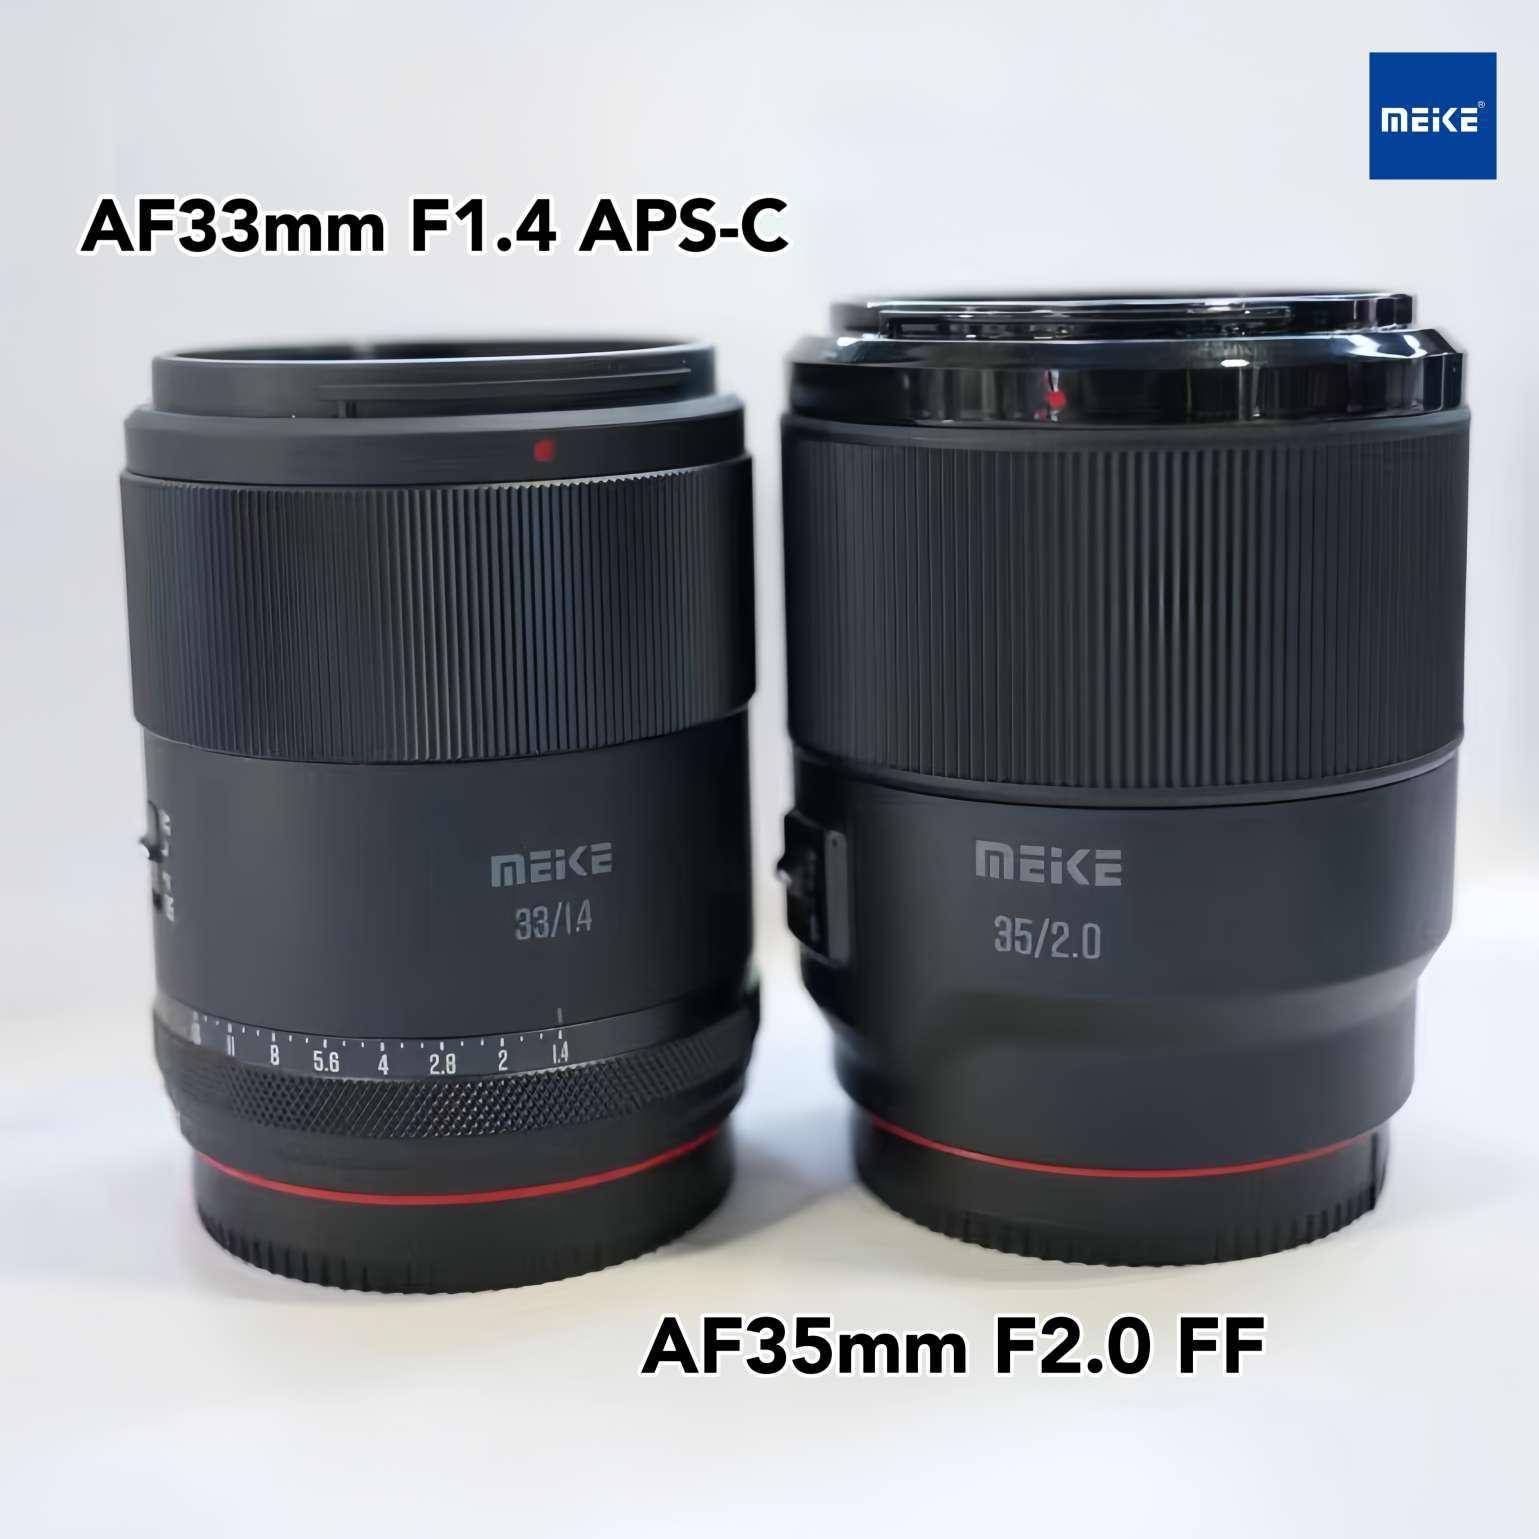 美科镜头新品官宣 将发布AF33mm F1.4 APS-C镜头等产品